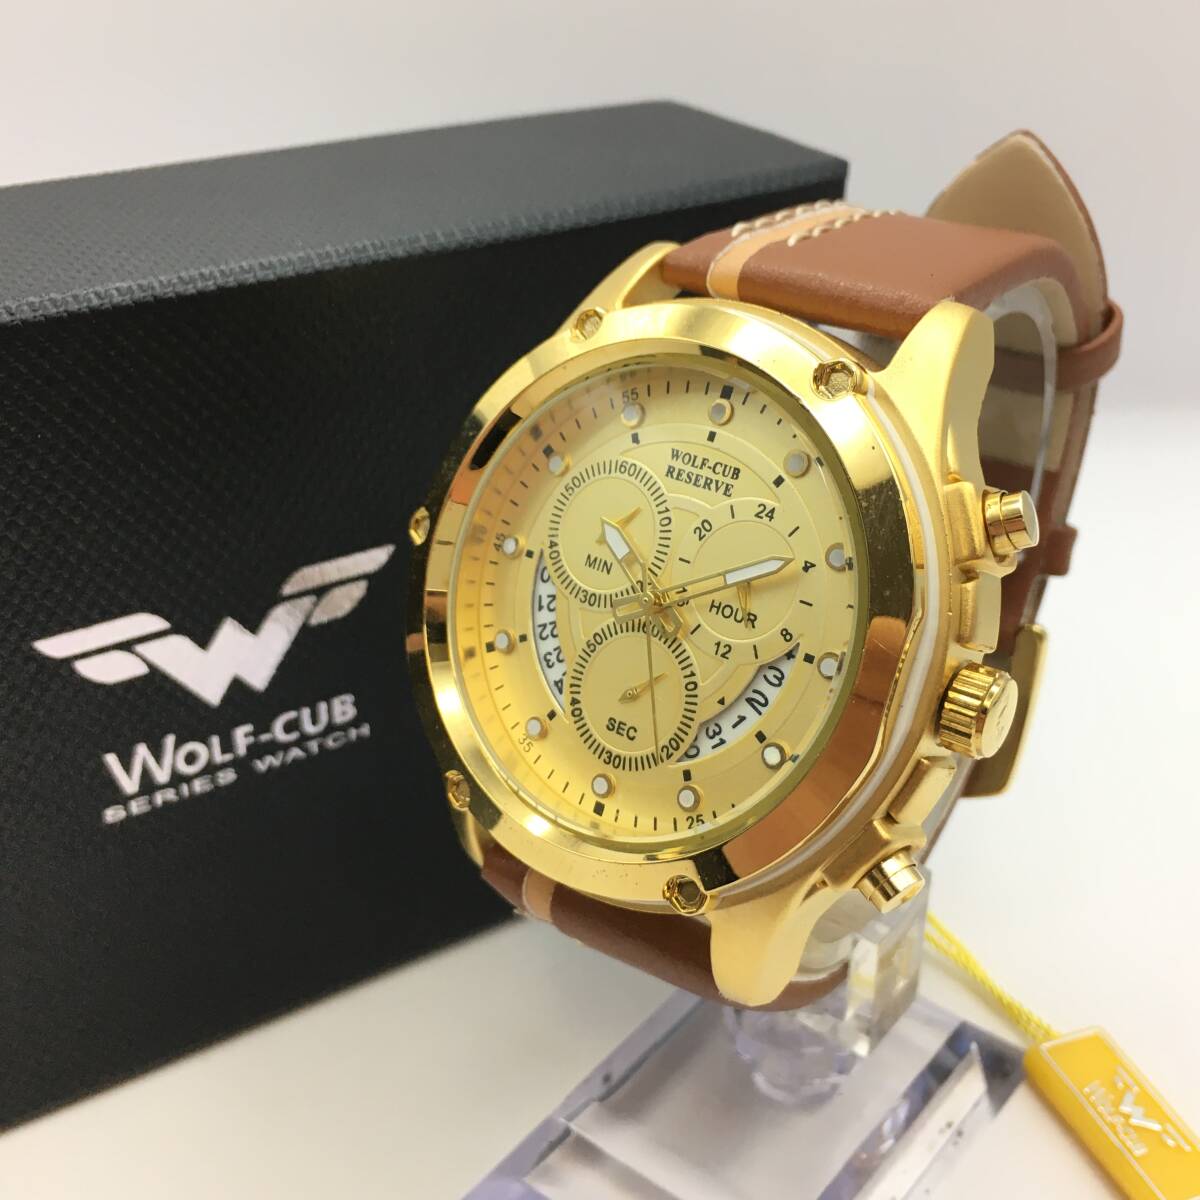 ○B12-115 WOLF-CUB/ウルフ 3針 Date デイト メンズ クォーツ 腕時計 レザーベルト W-1612 付属品ありの画像1